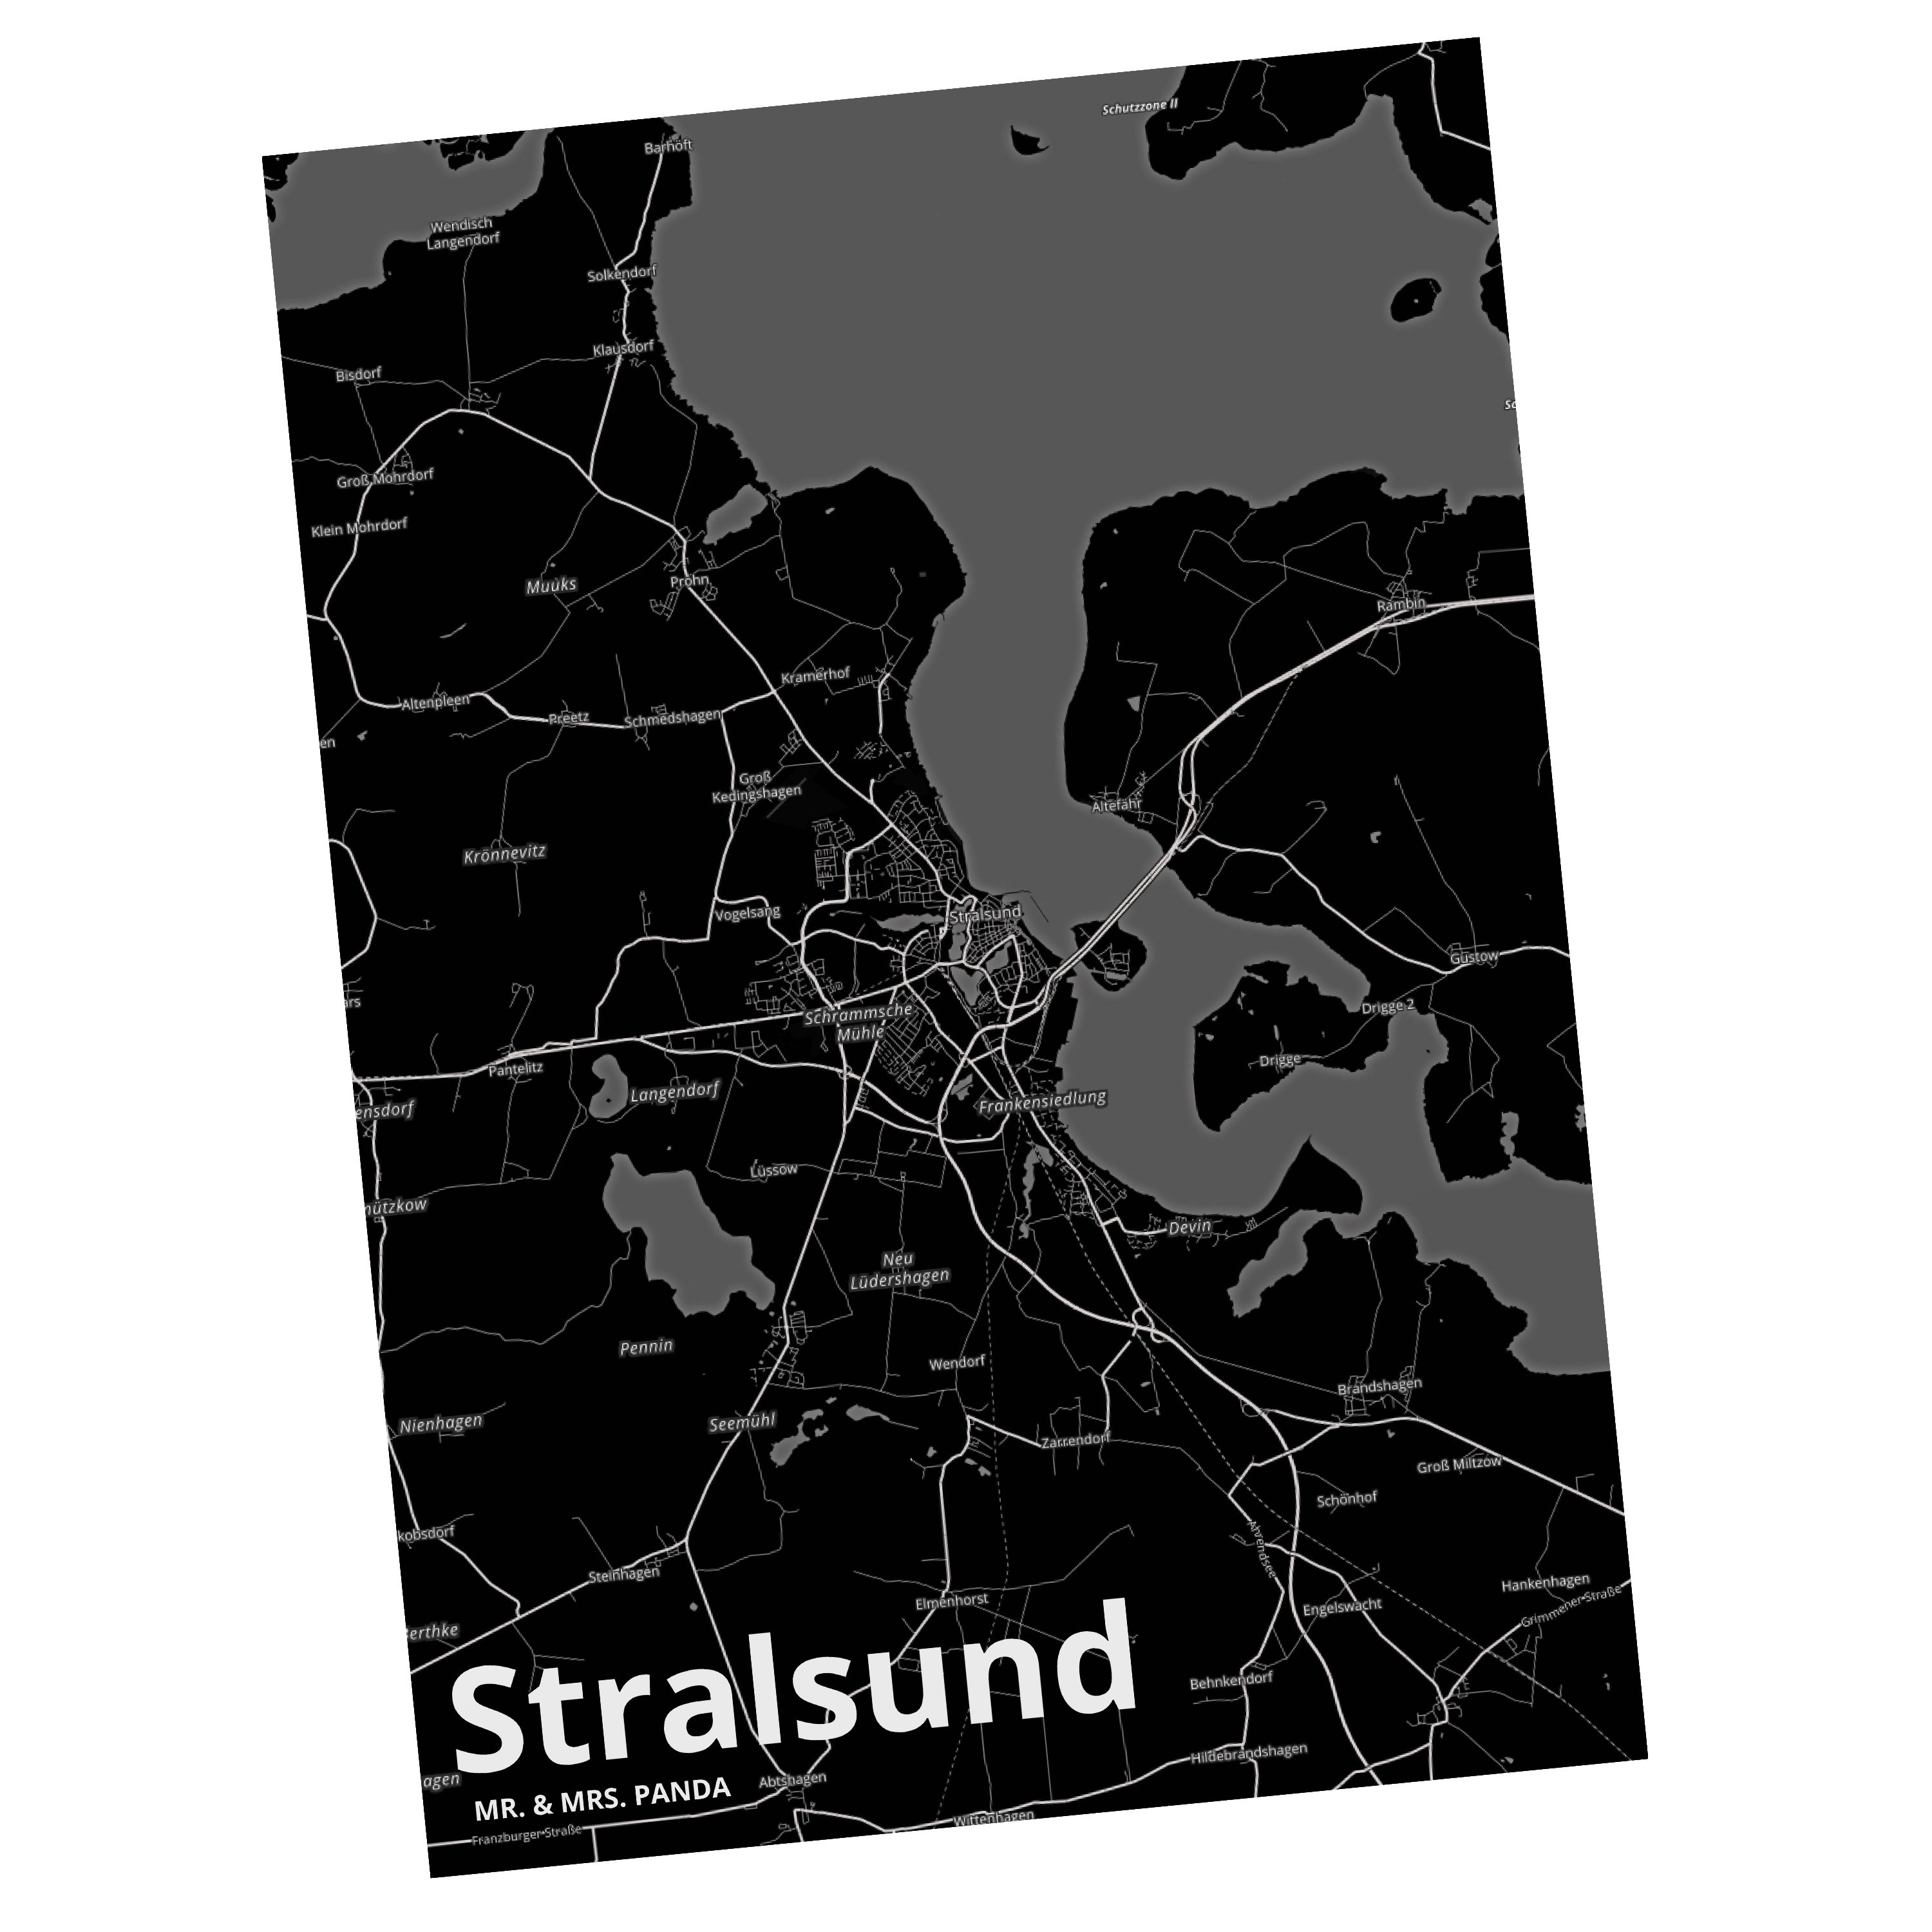 Mr. & Mrs. Panda Postkarte Stralsund - Geschenk, Ort, Geschenkkarte, Grußkarte, Einladung, Einla